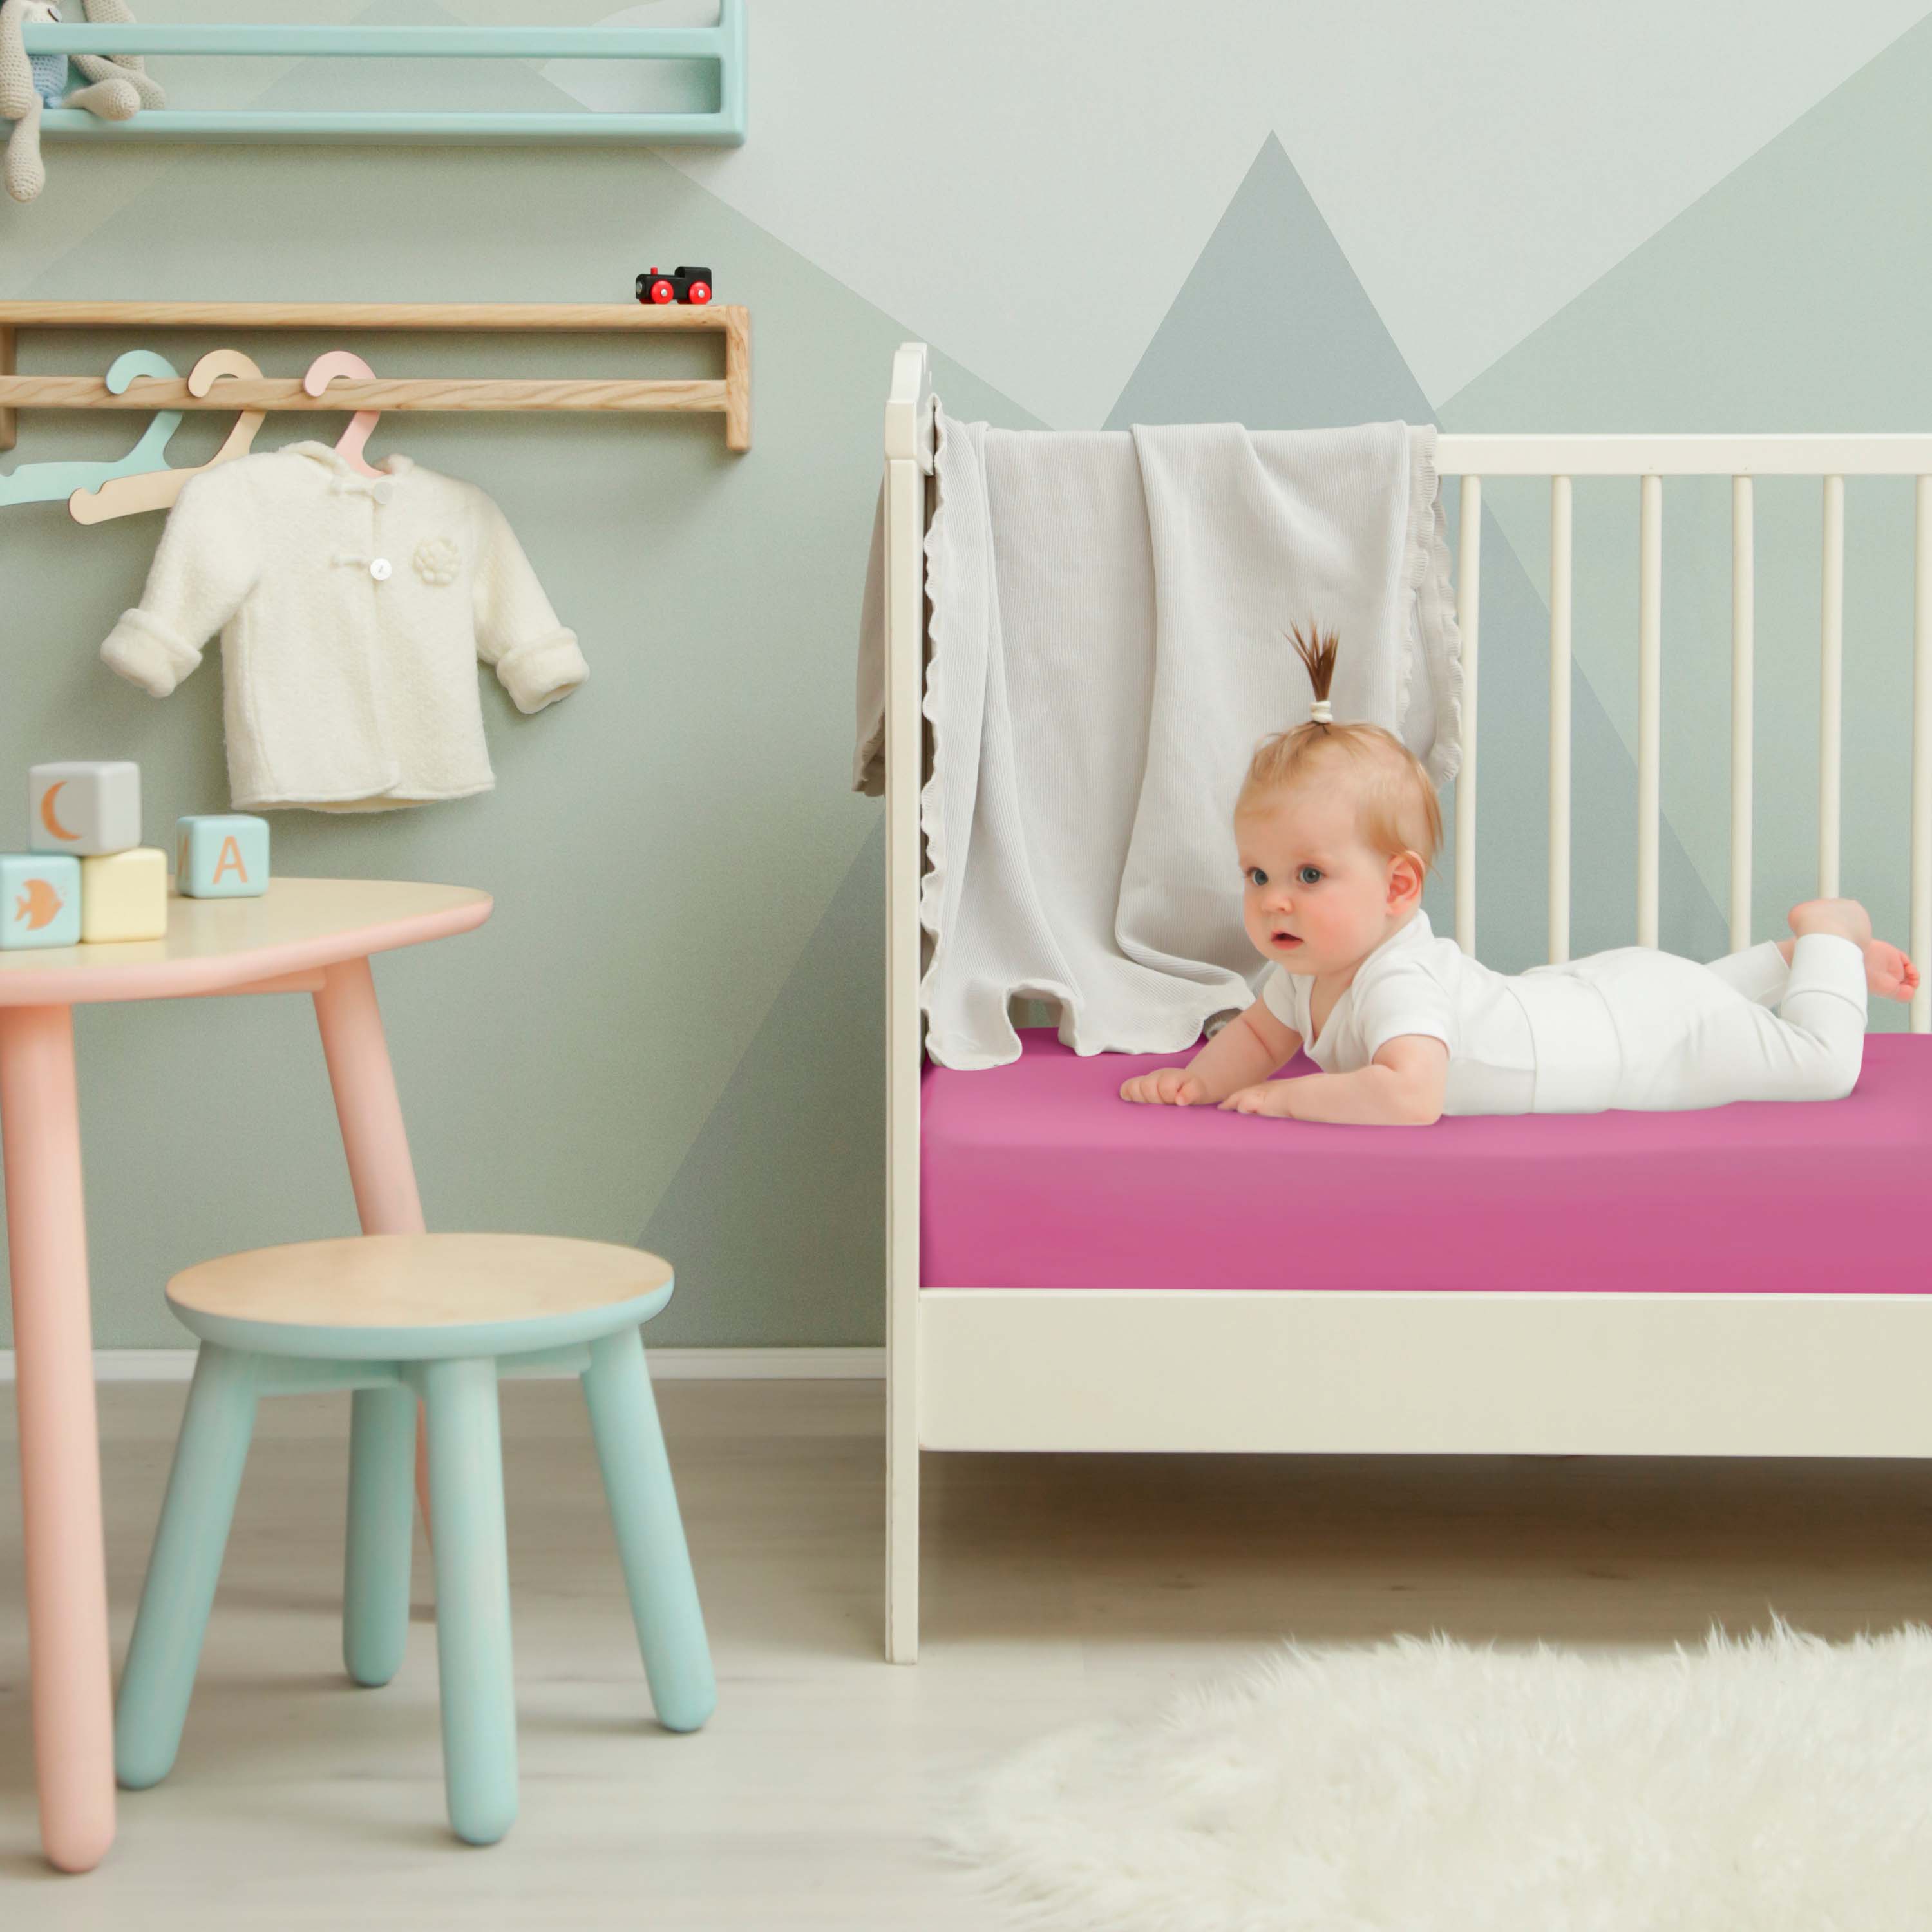 Traumhaft gut Schlafen – Kinder-/Baby Spannbetttuch, hochwertige Qualität, trocknergeeignet 